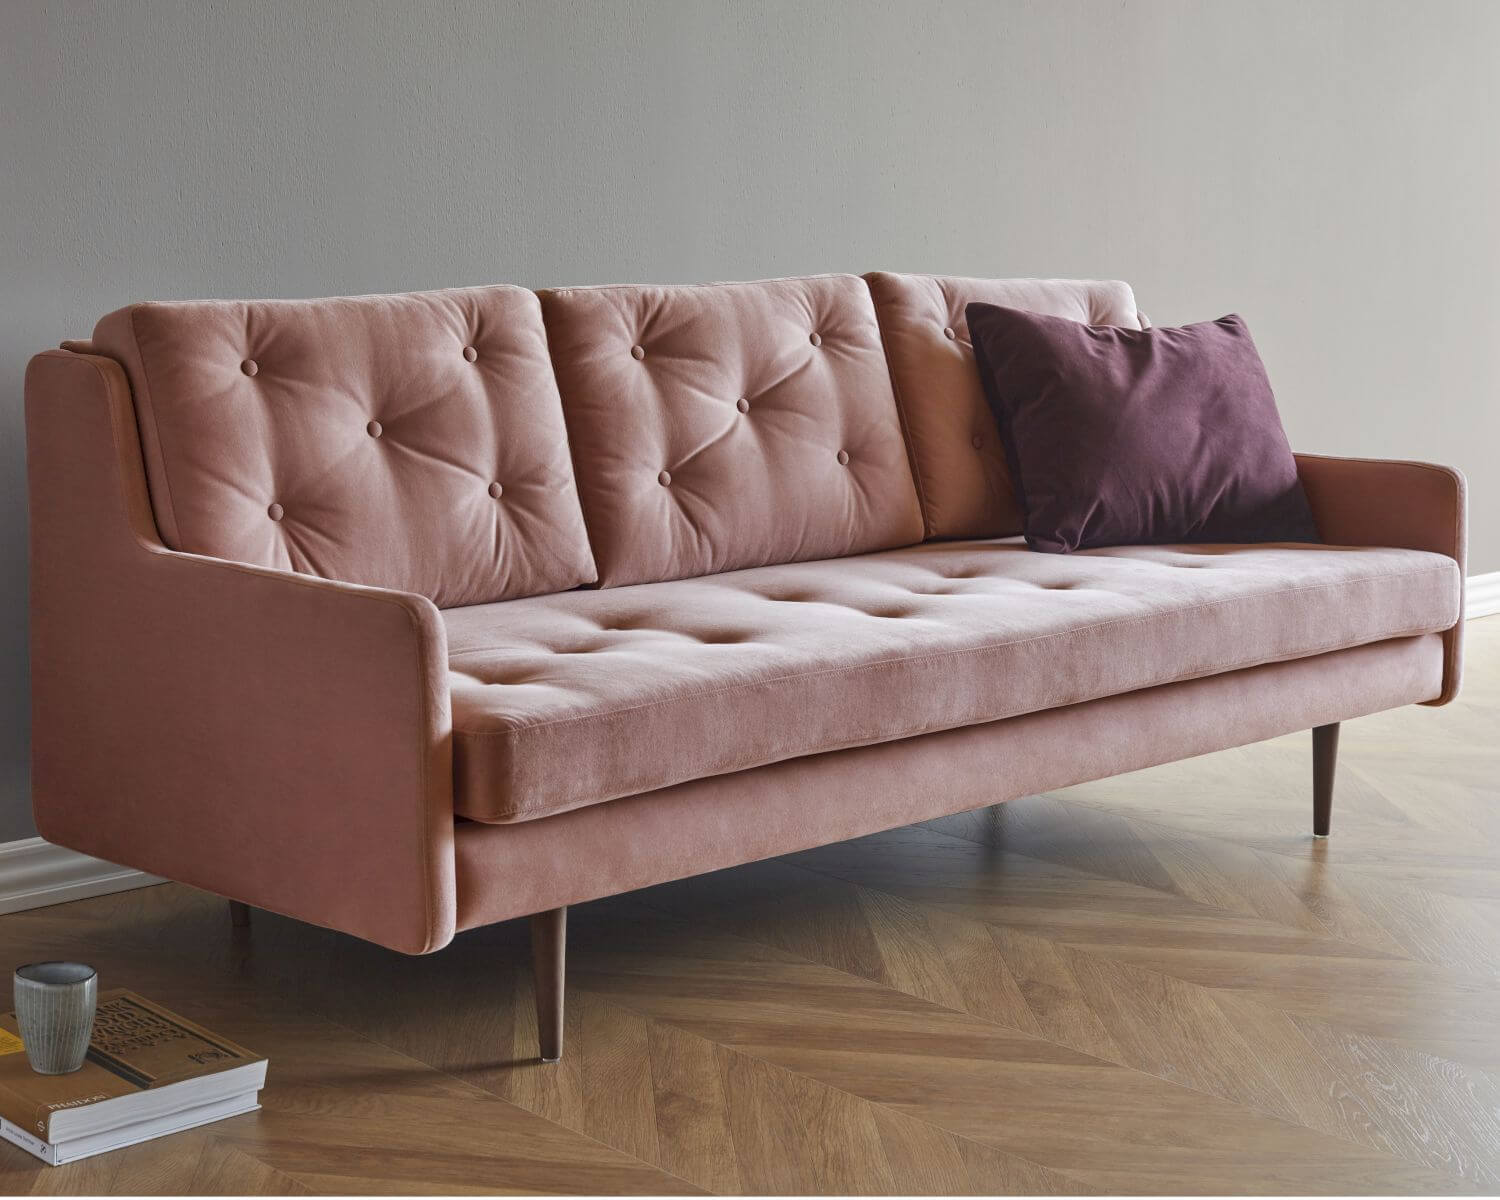 Kragelund »Holme« Couch erhältlich bei • slewo.com